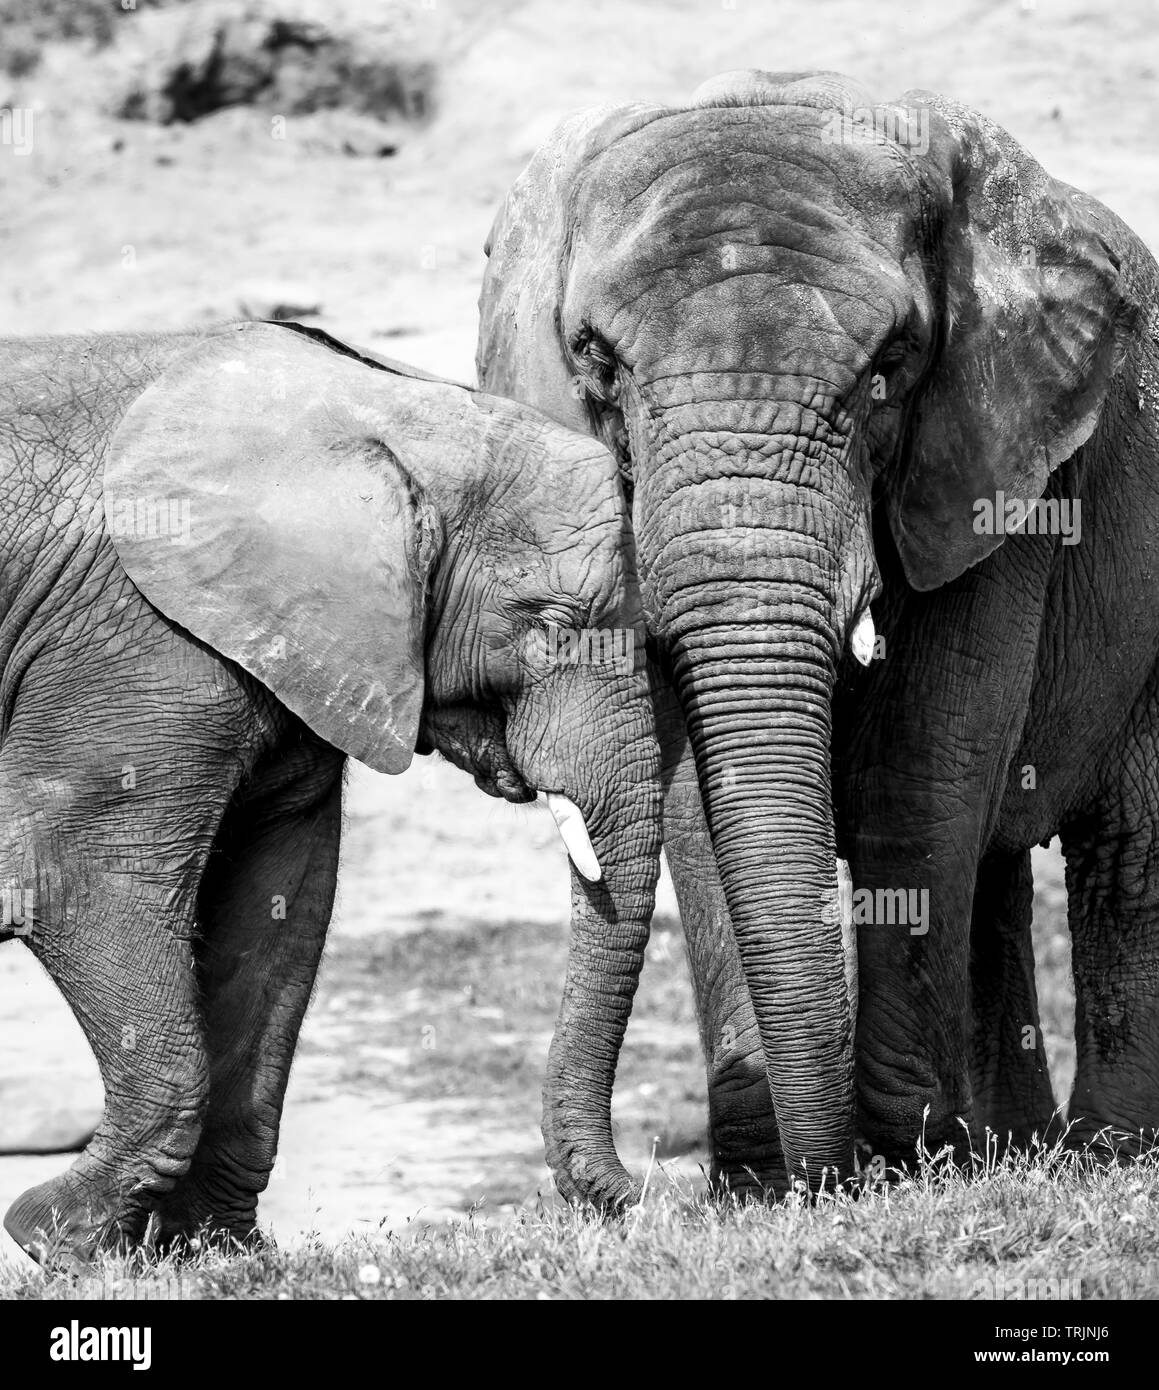 Schwarz-Weiß Nahaufnahme zeigt starke Zuneigung, Bindung, Liebe zwischen afrikanischem Elefantenkalb und seiner Mutter (Loxodonta) zusammen. Stockfoto